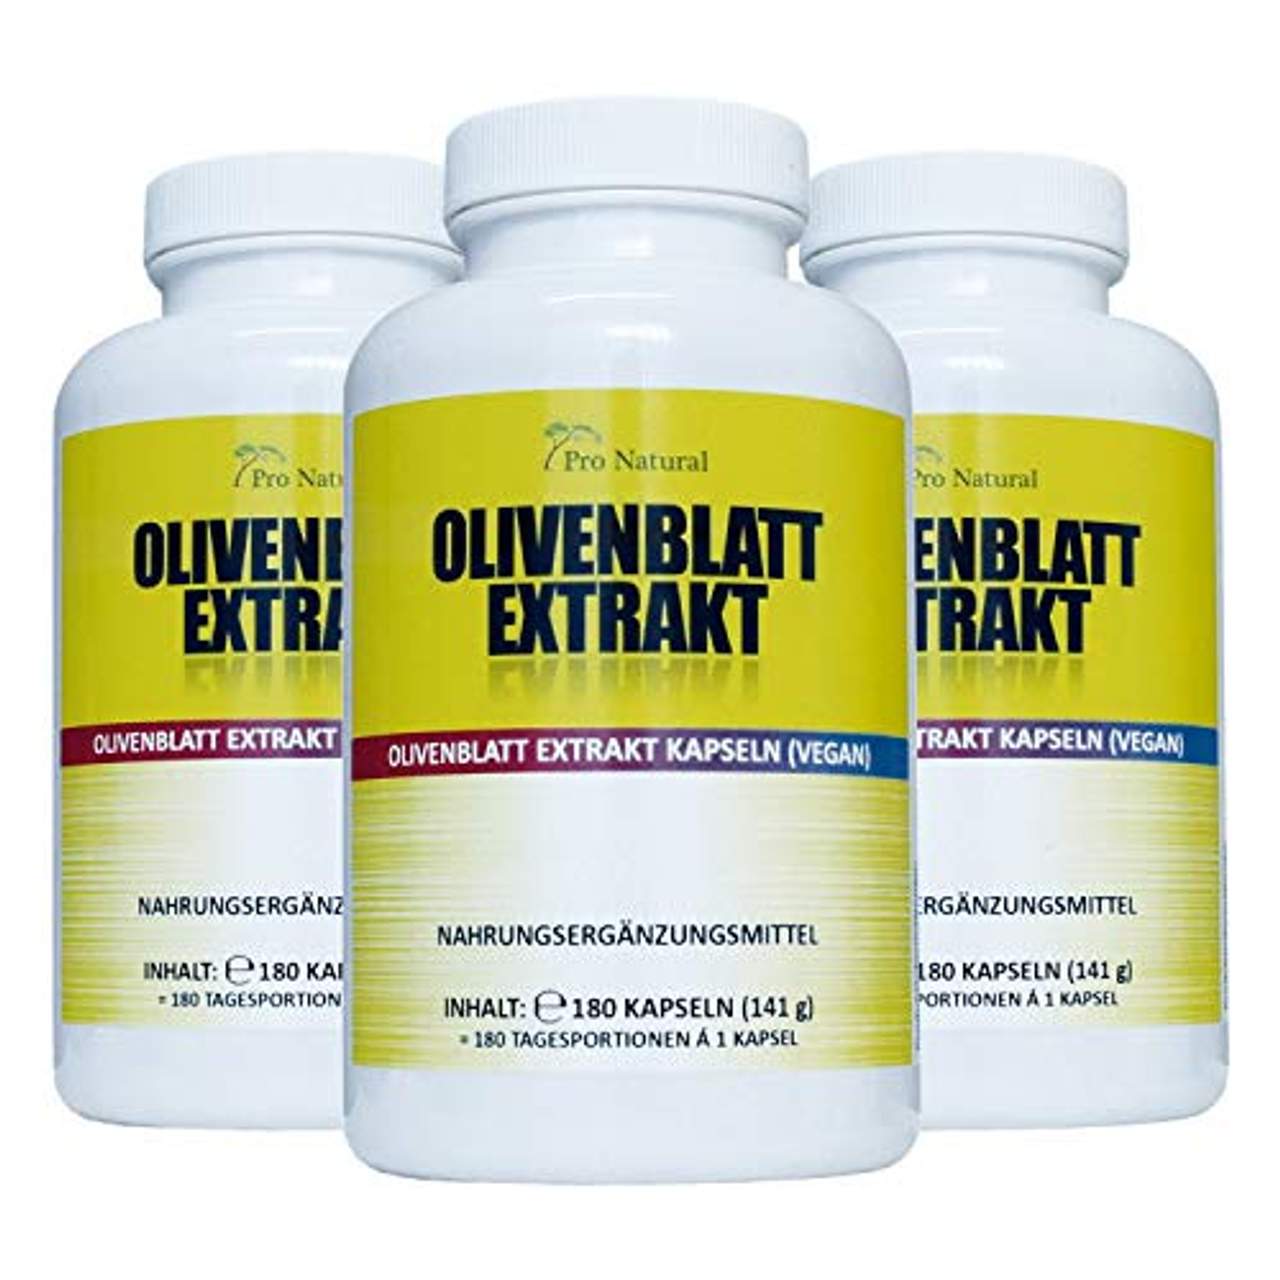 Pro Natural Olivenblatt Extrakt 650